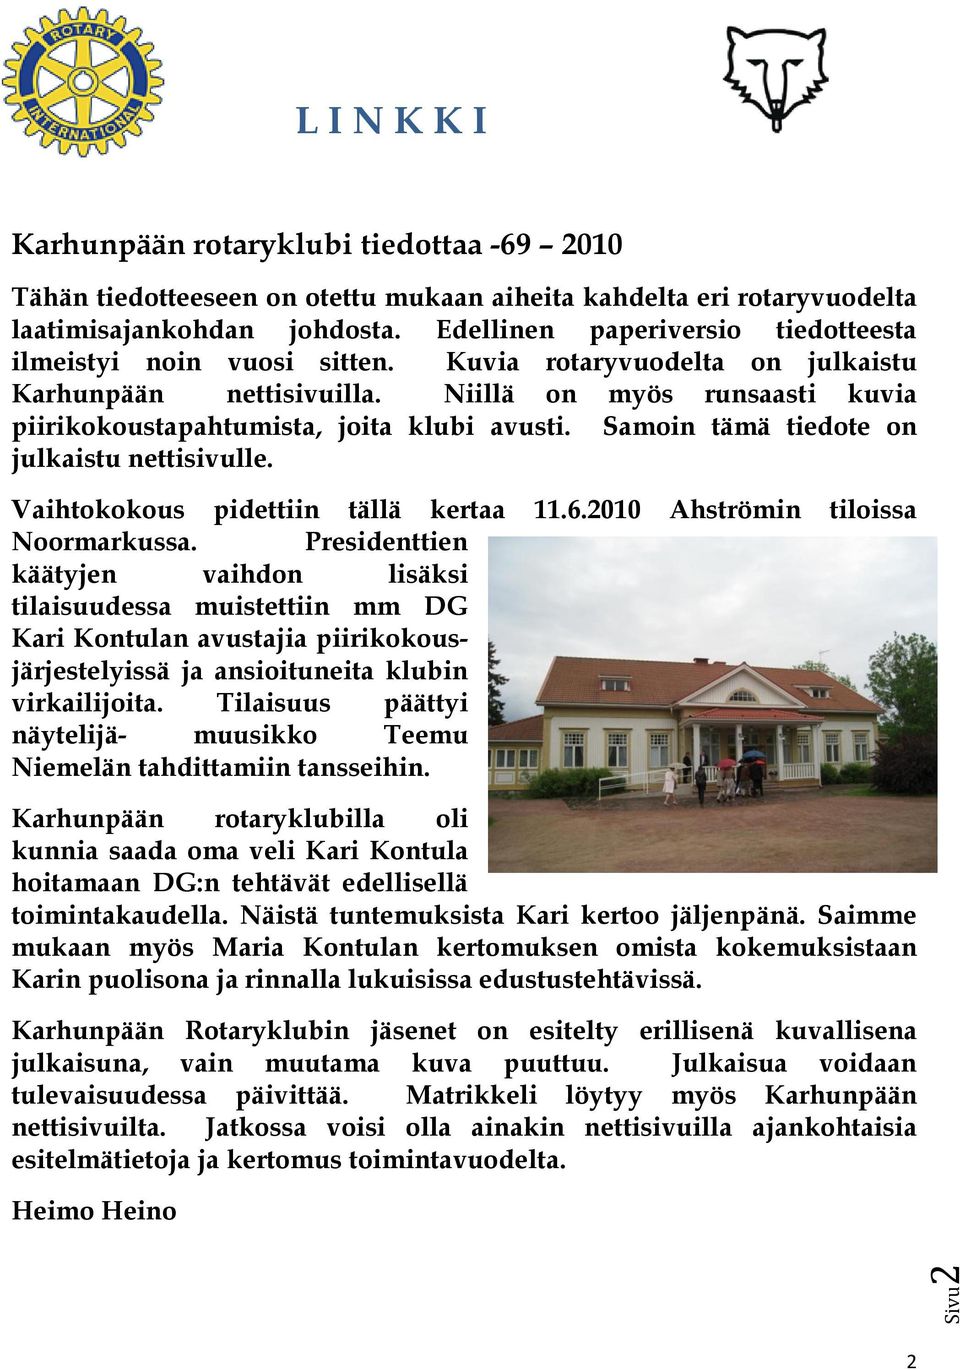 Samoin tämä tiedote on julkaistu nettisivulle. Vaihtokokous pidettiin tällä kertaa 11.6.2010 Ahströmin tiloissa Noormarkussa.